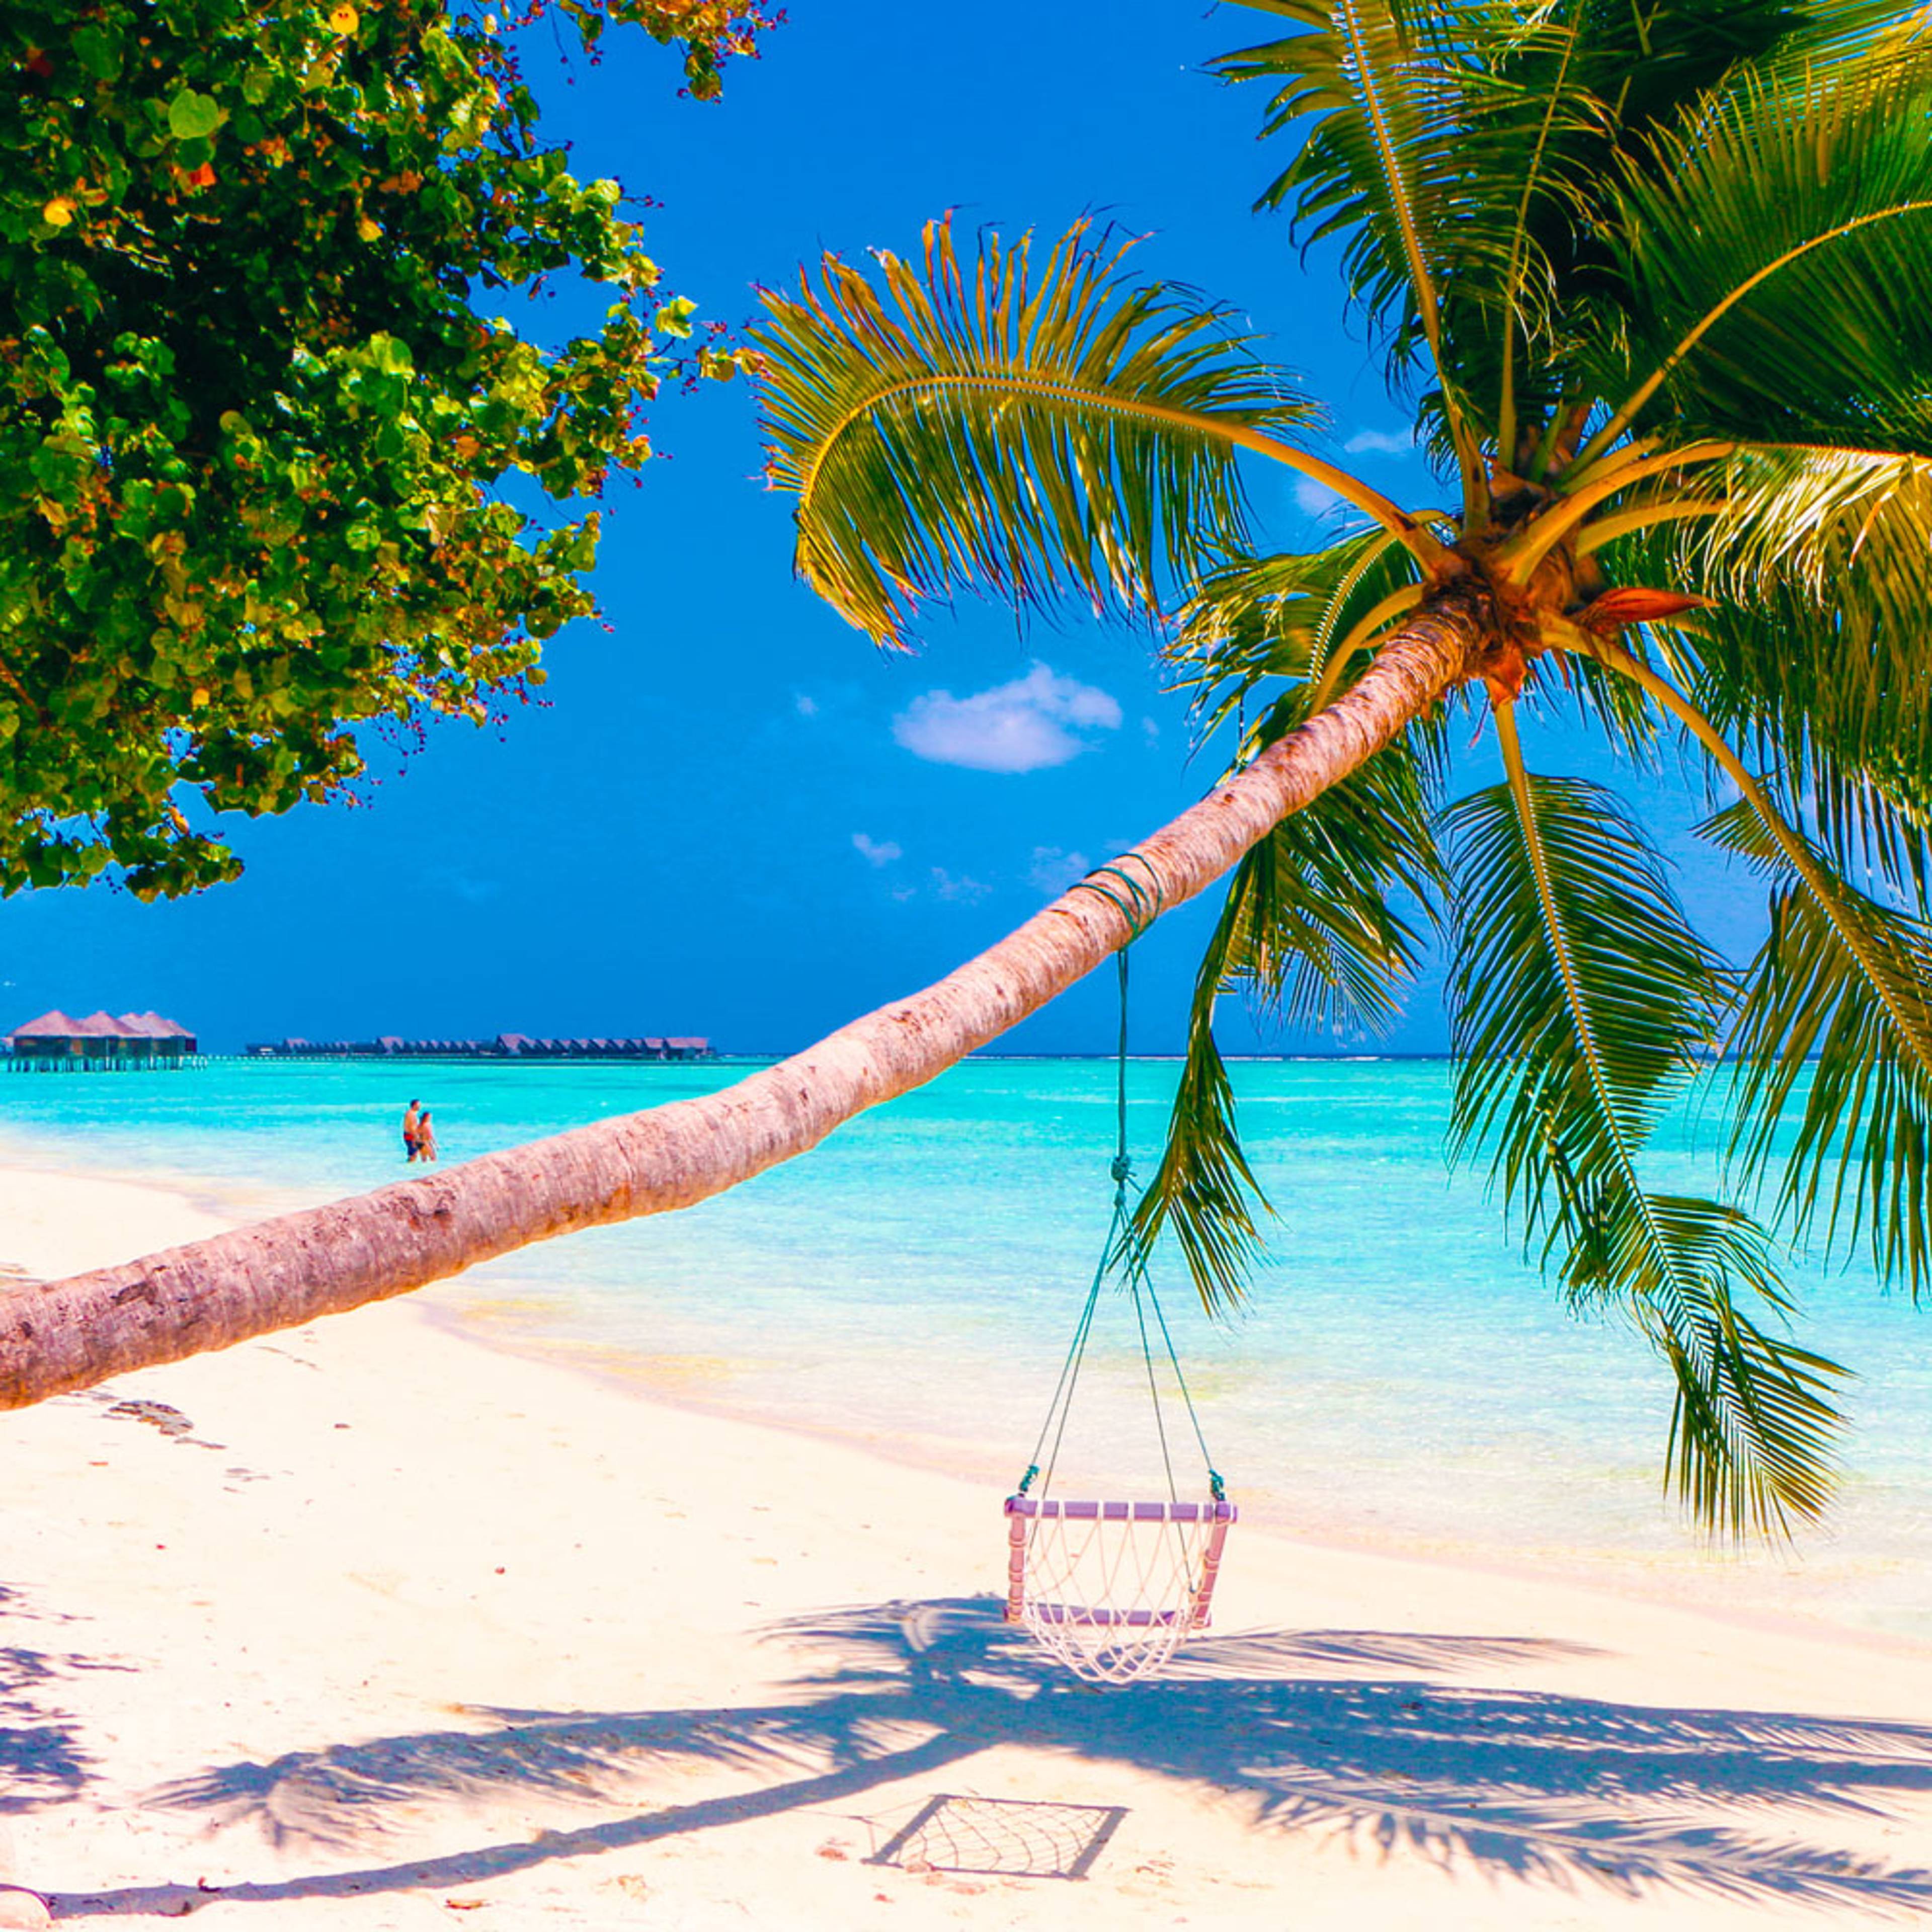 Découvrez les plus belles plages lors de votre voyage aux Maldives 100% sur mesure